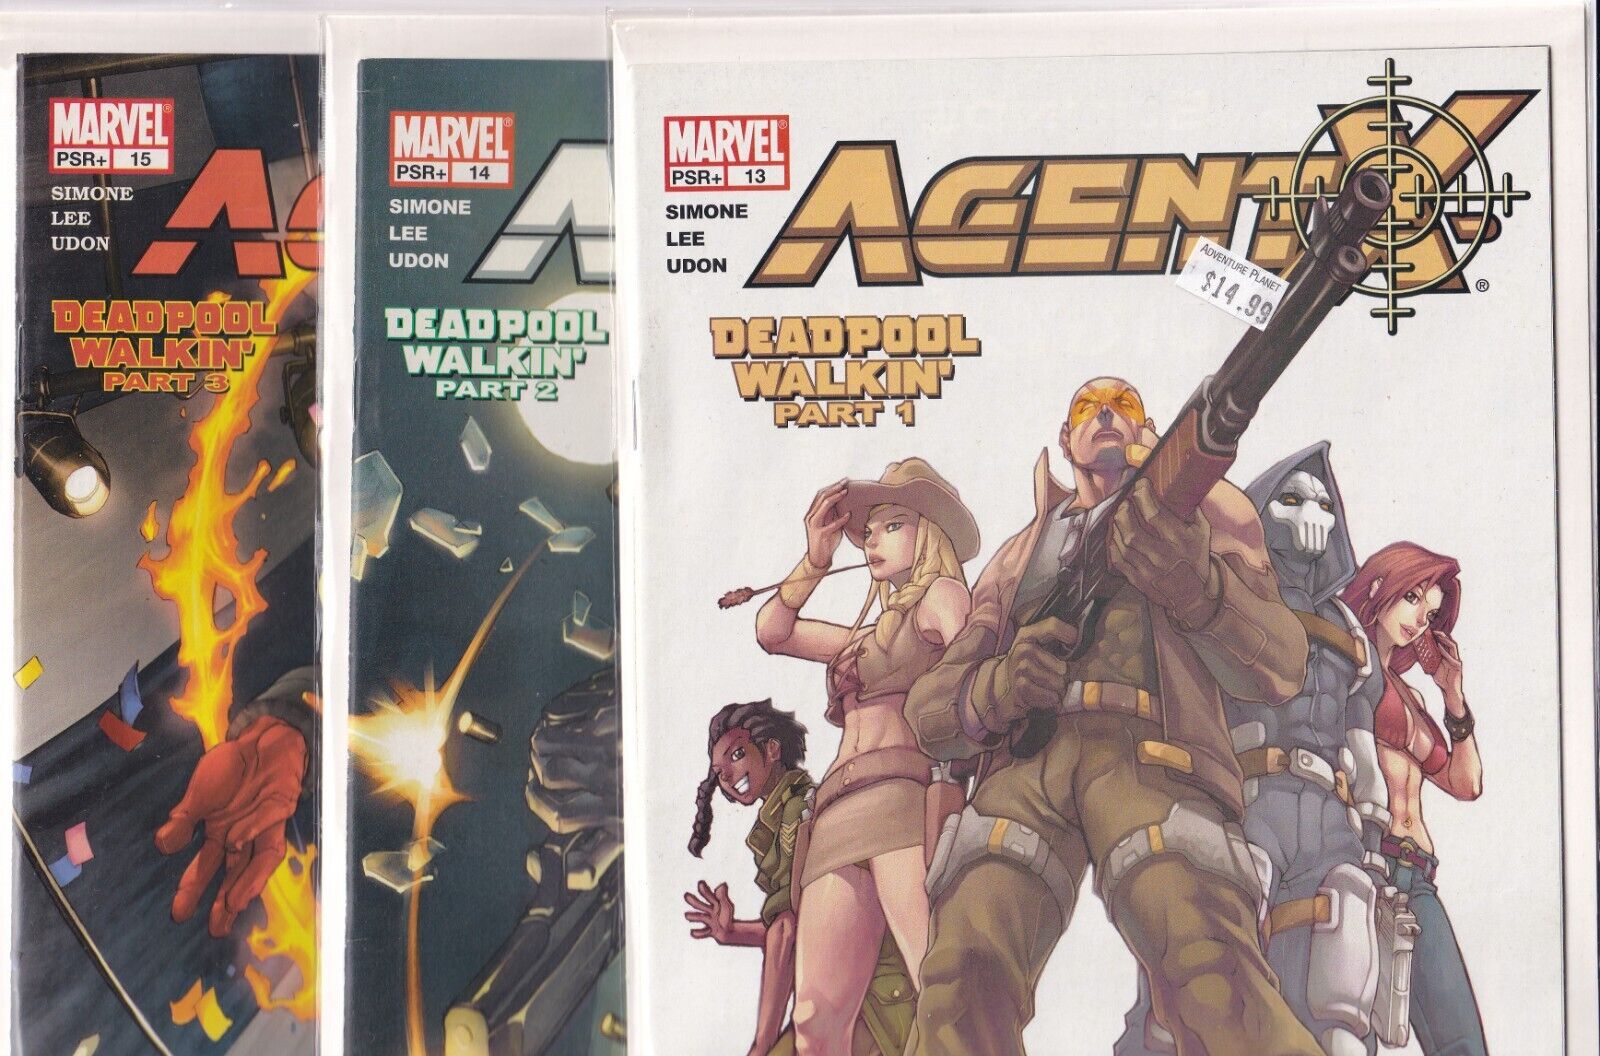 Agent X #13-15 Deadpool Walkin' Parts 1-3 (Marvel Comics, 2002)